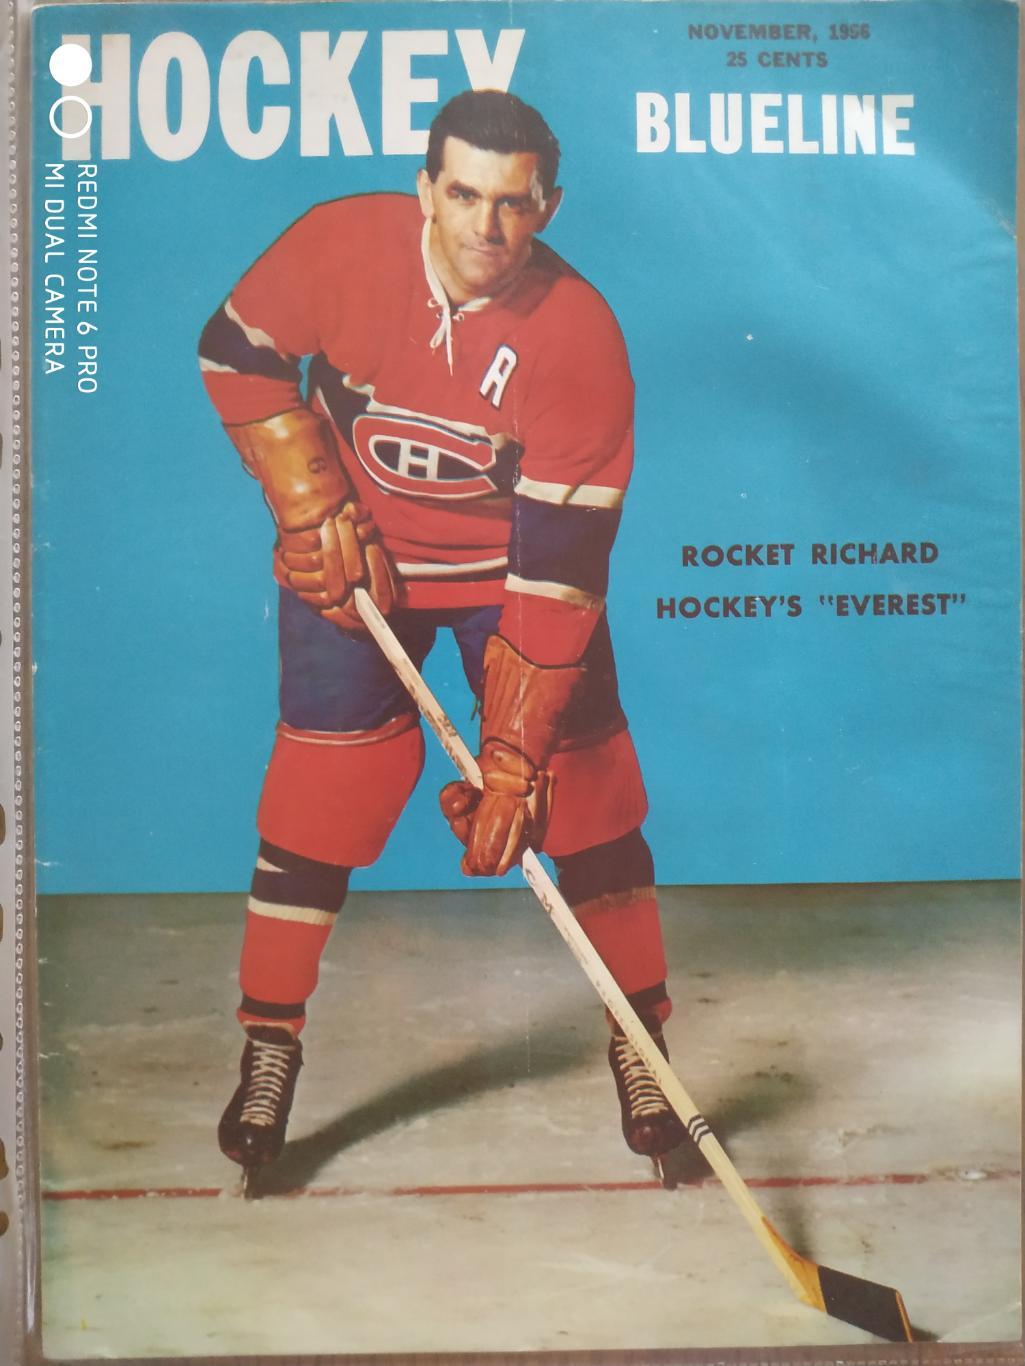 ЖУРНАЛ ЕЖЕМЕСЯЧНИК НХЛ NHL 1956 NOVEMBER THE HOCKEY MONTHLY BLUELINE